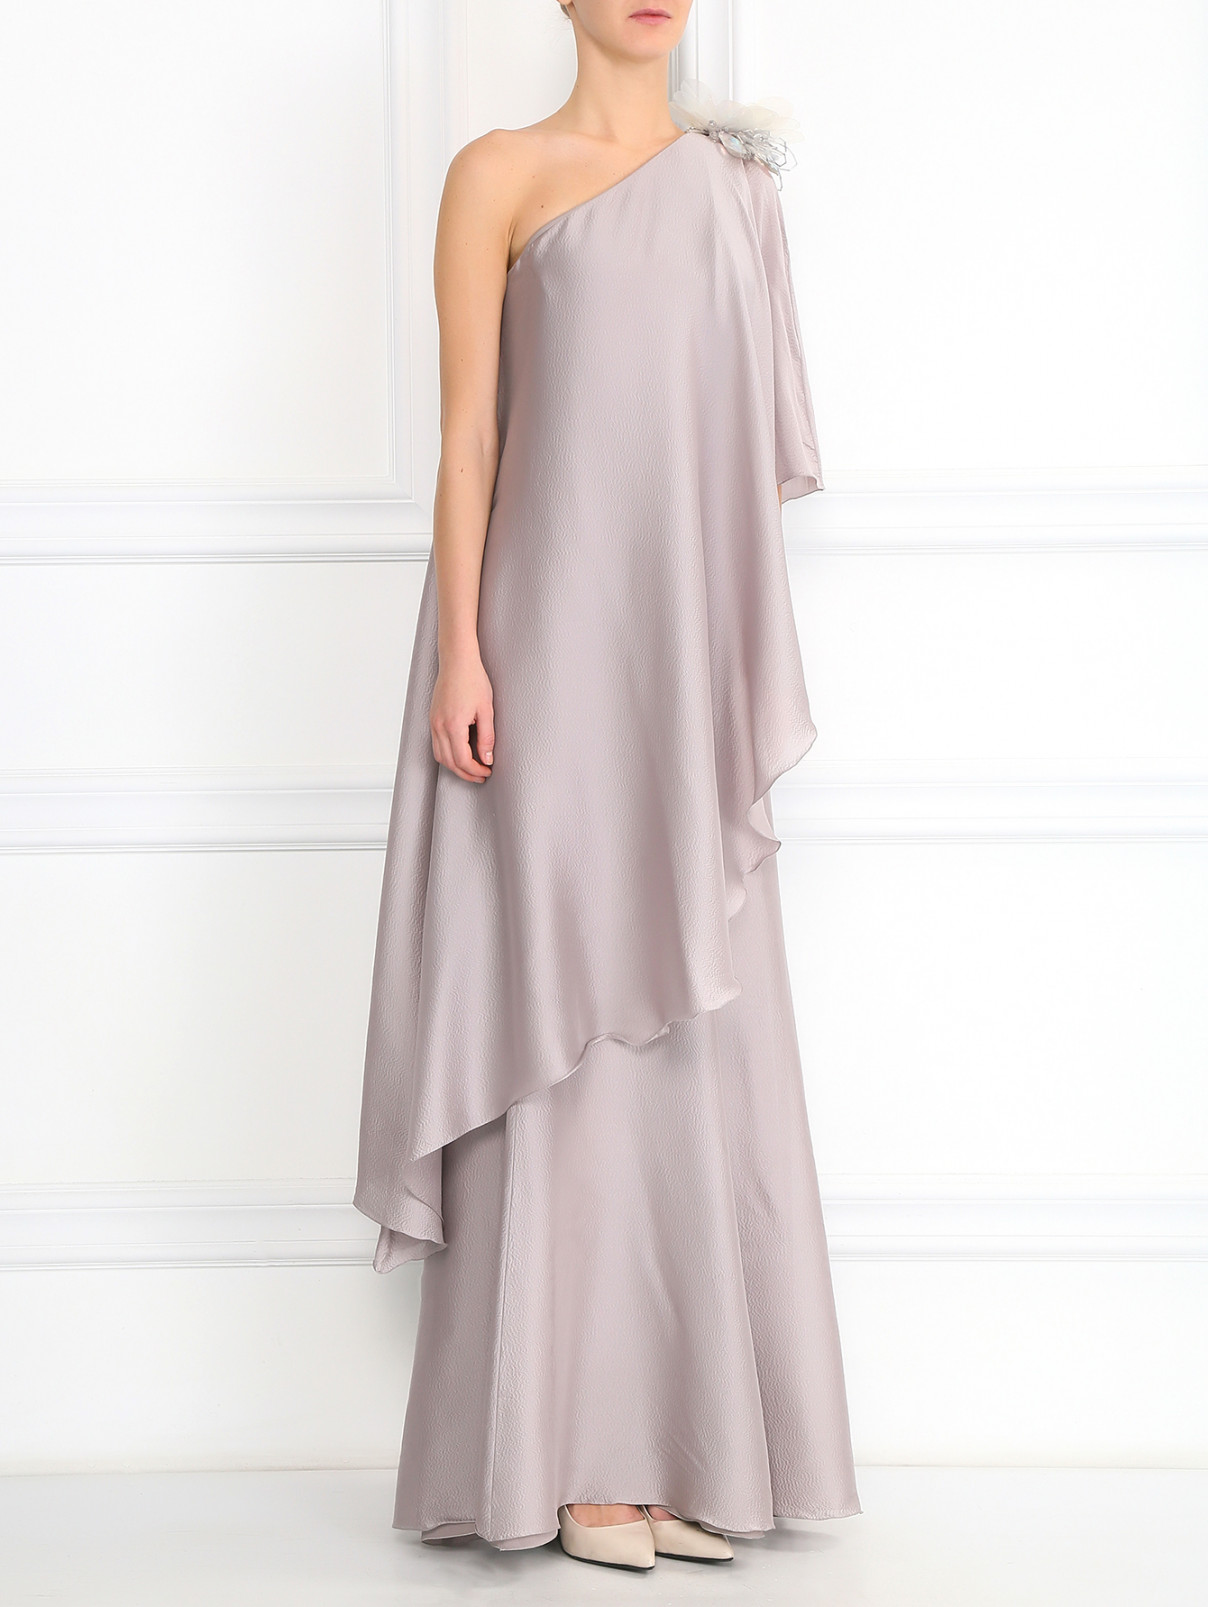 Платье-макси из шелка с декоративным цветком Andrew GN  –  Модель Общий вид  – Цвет:  Серый